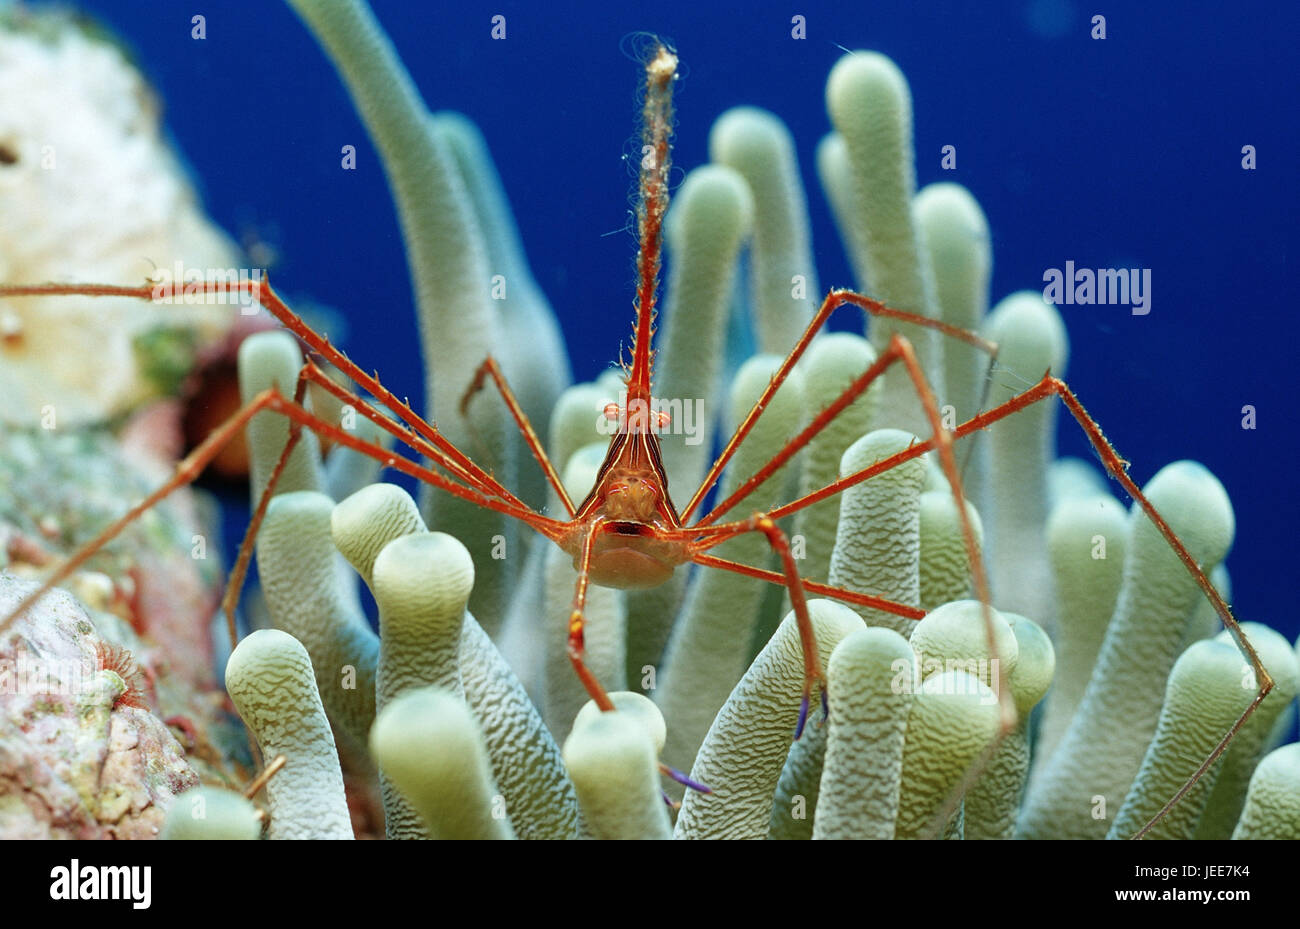 Stenorhynchus seticornis crabe, filature, anemone, les Caraïbes, Banque D'Images